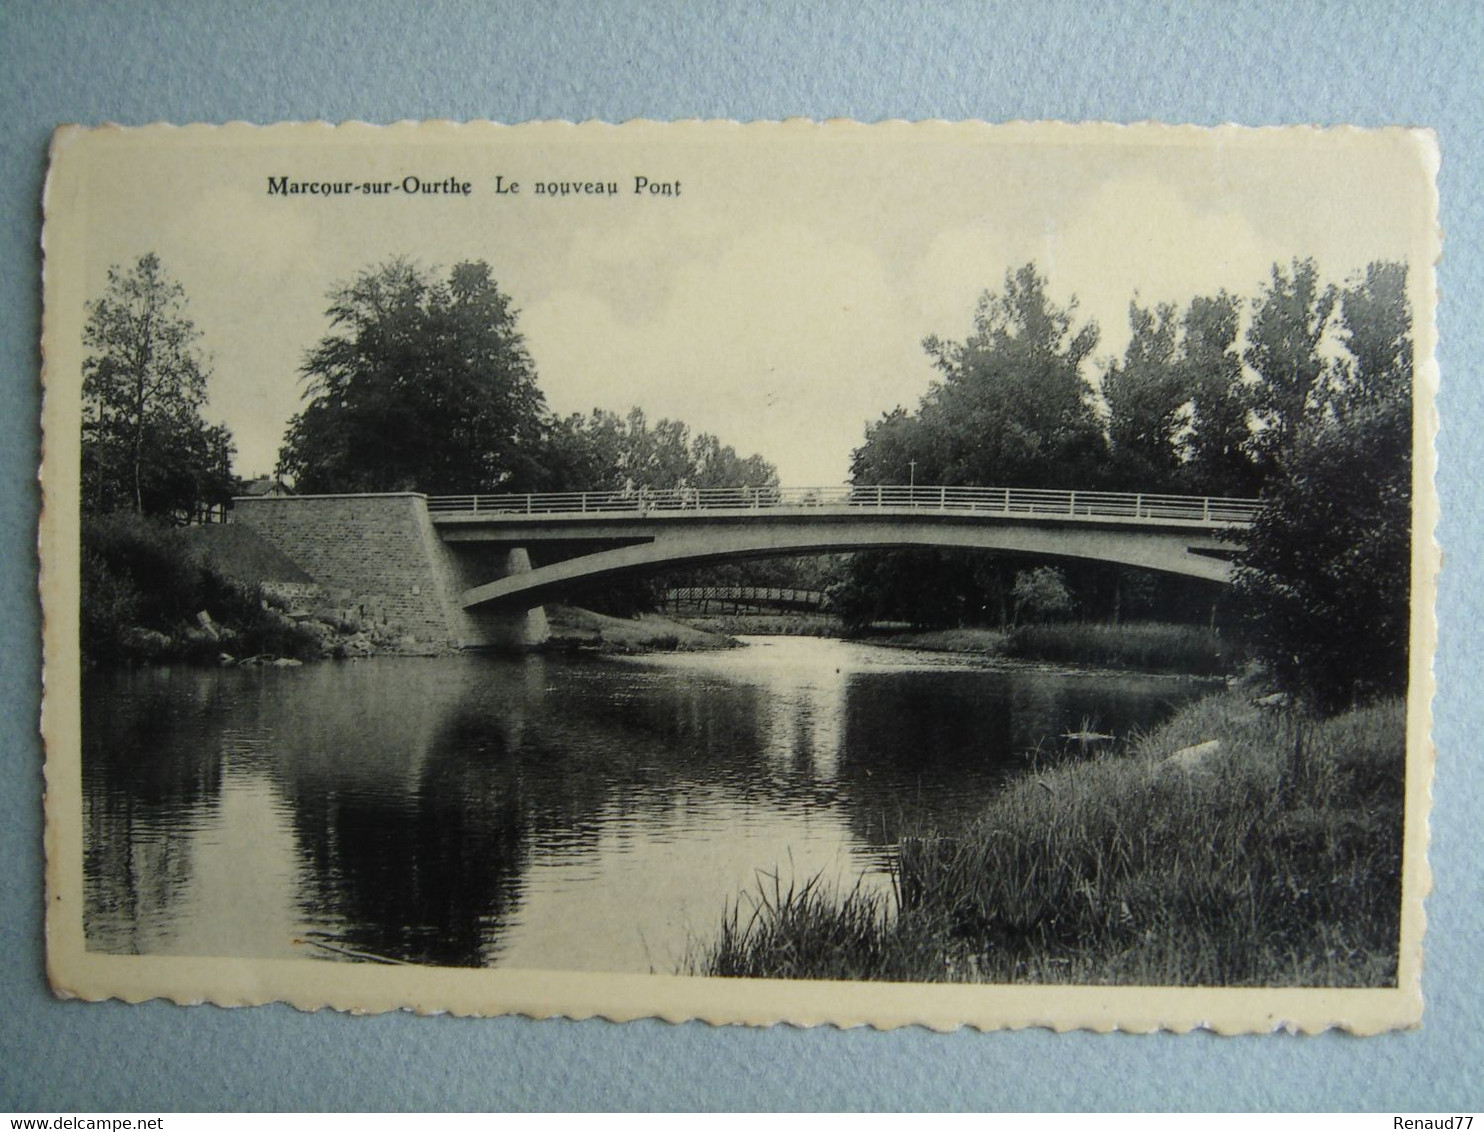 Marcour-sur-Ourthe (Le Nouveau Pont) - Rendeux